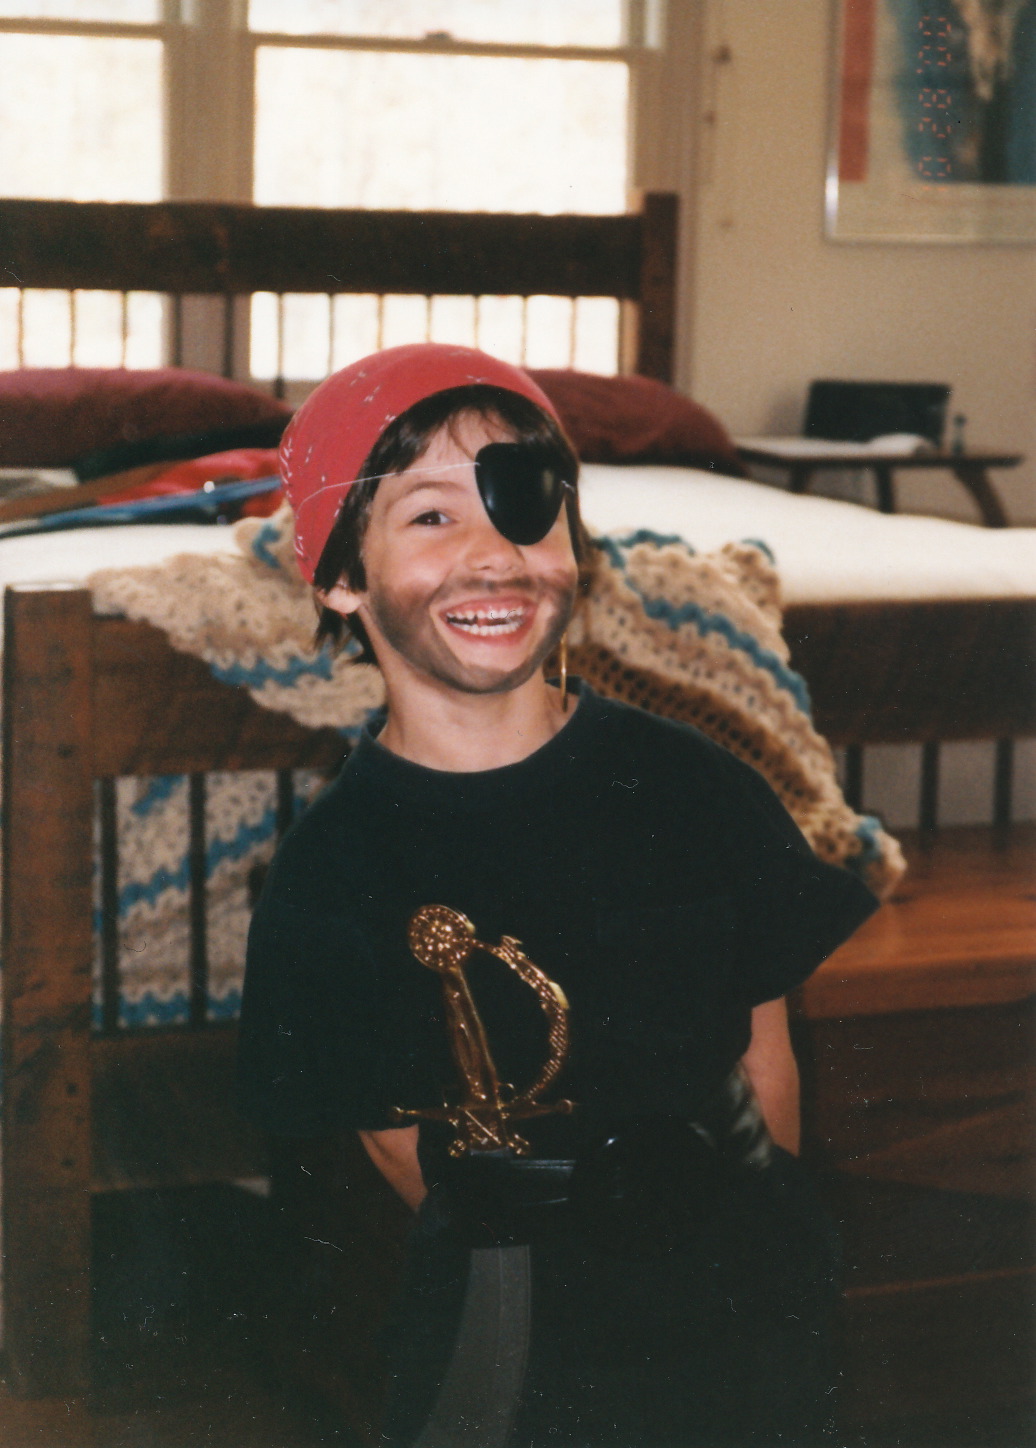 Alex as pirate